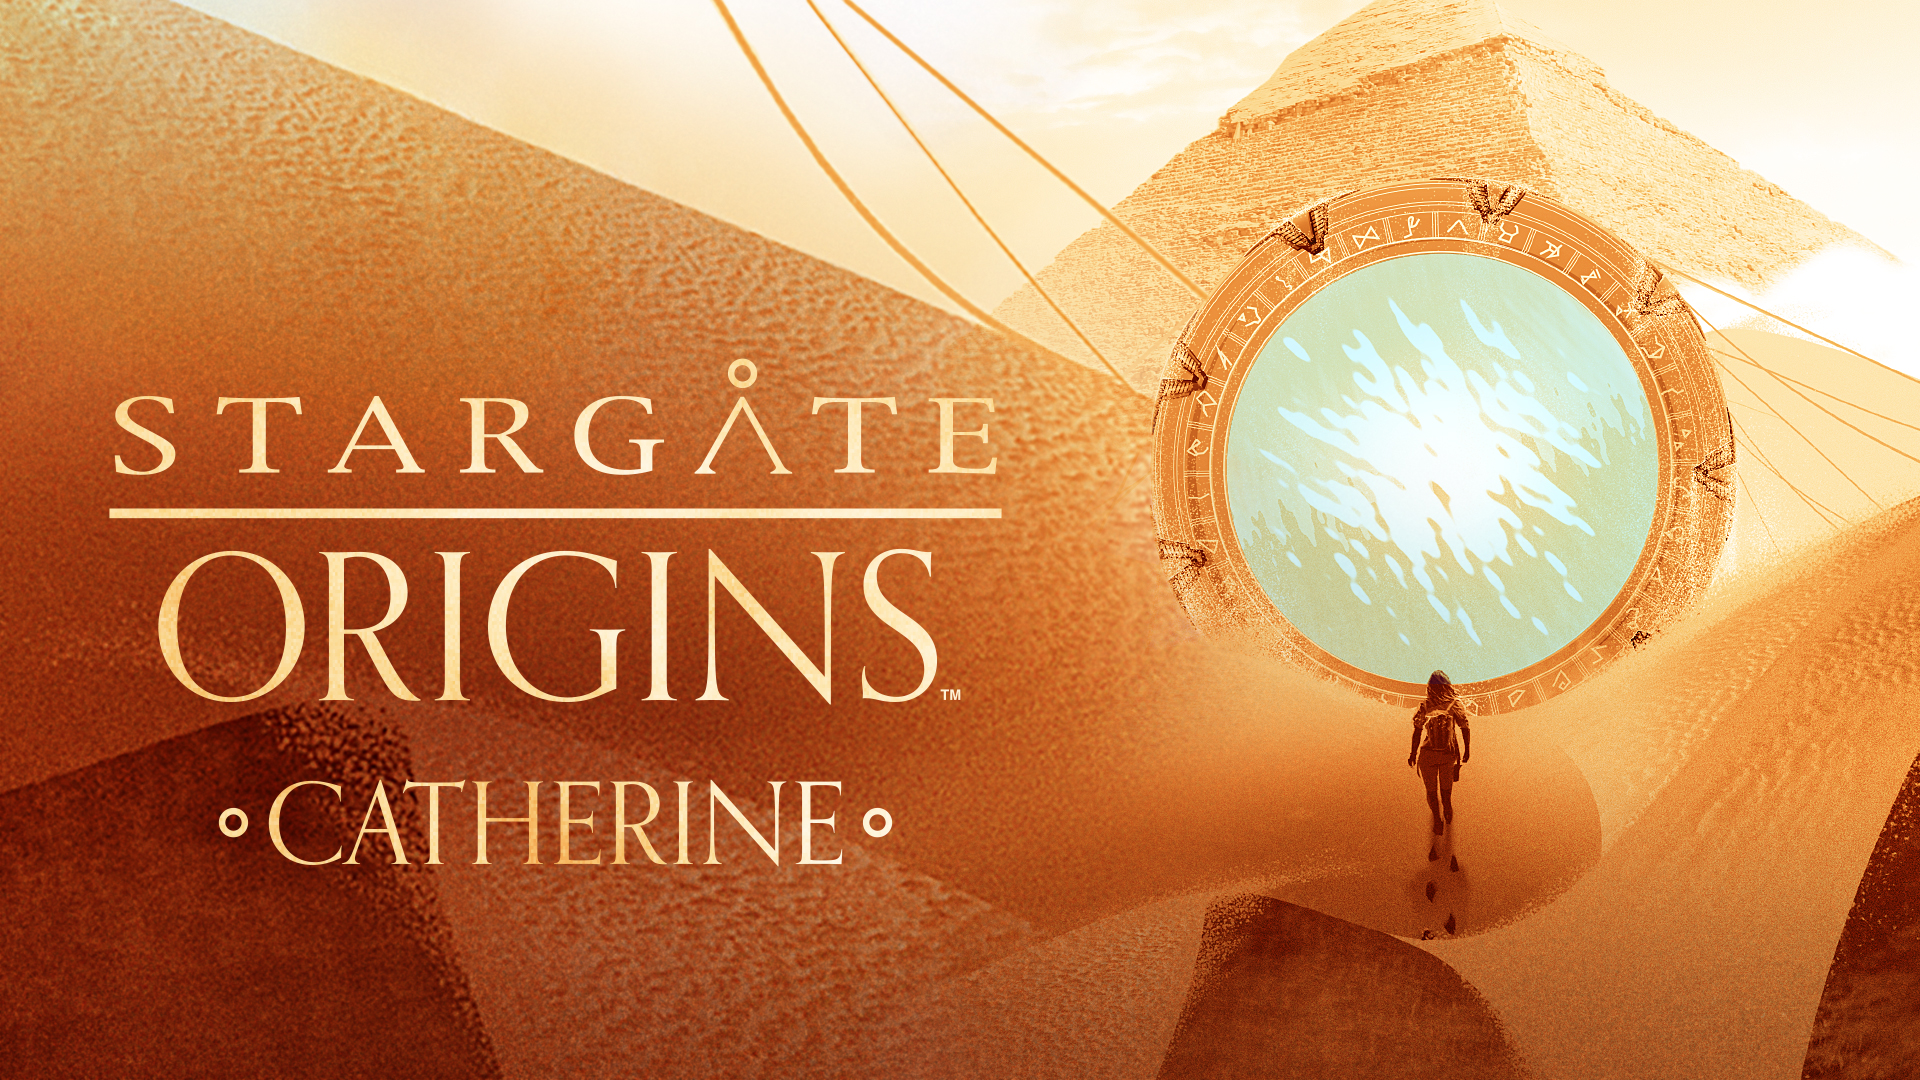 Descargar fondos de escritorio de Stargate Origins: Catherine HD